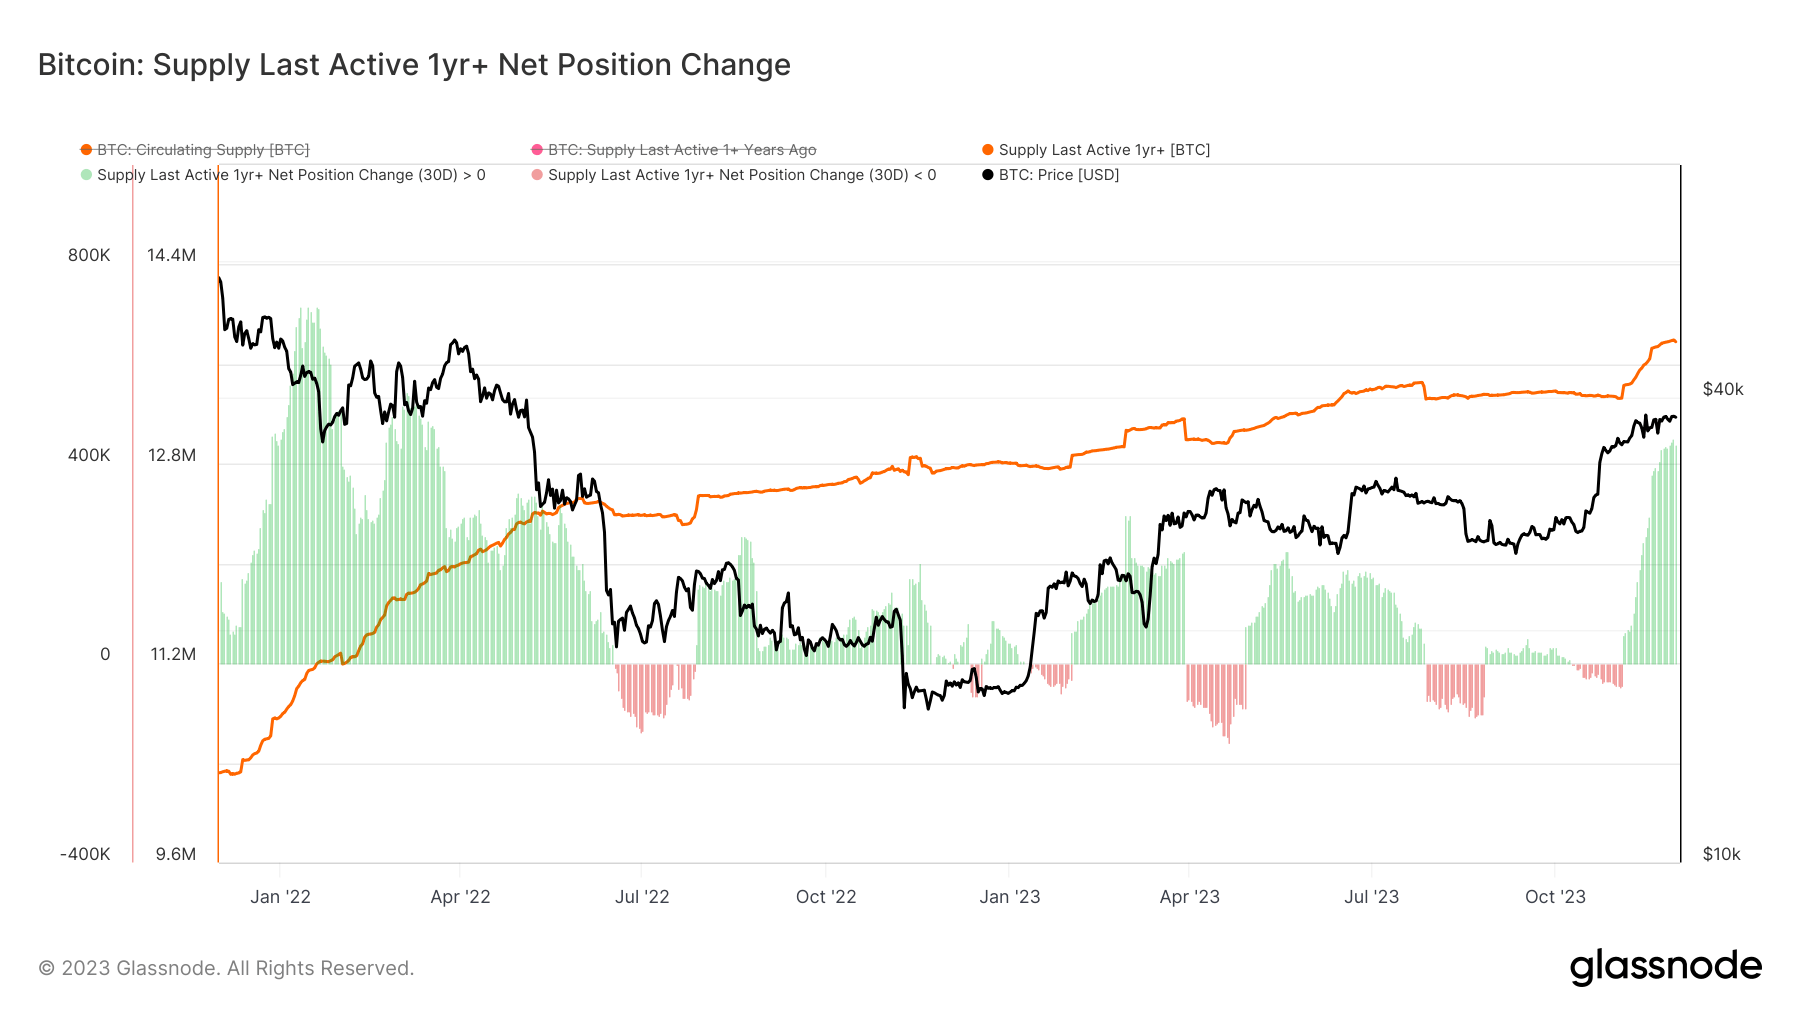 bitcoin supply last active 1+y ago